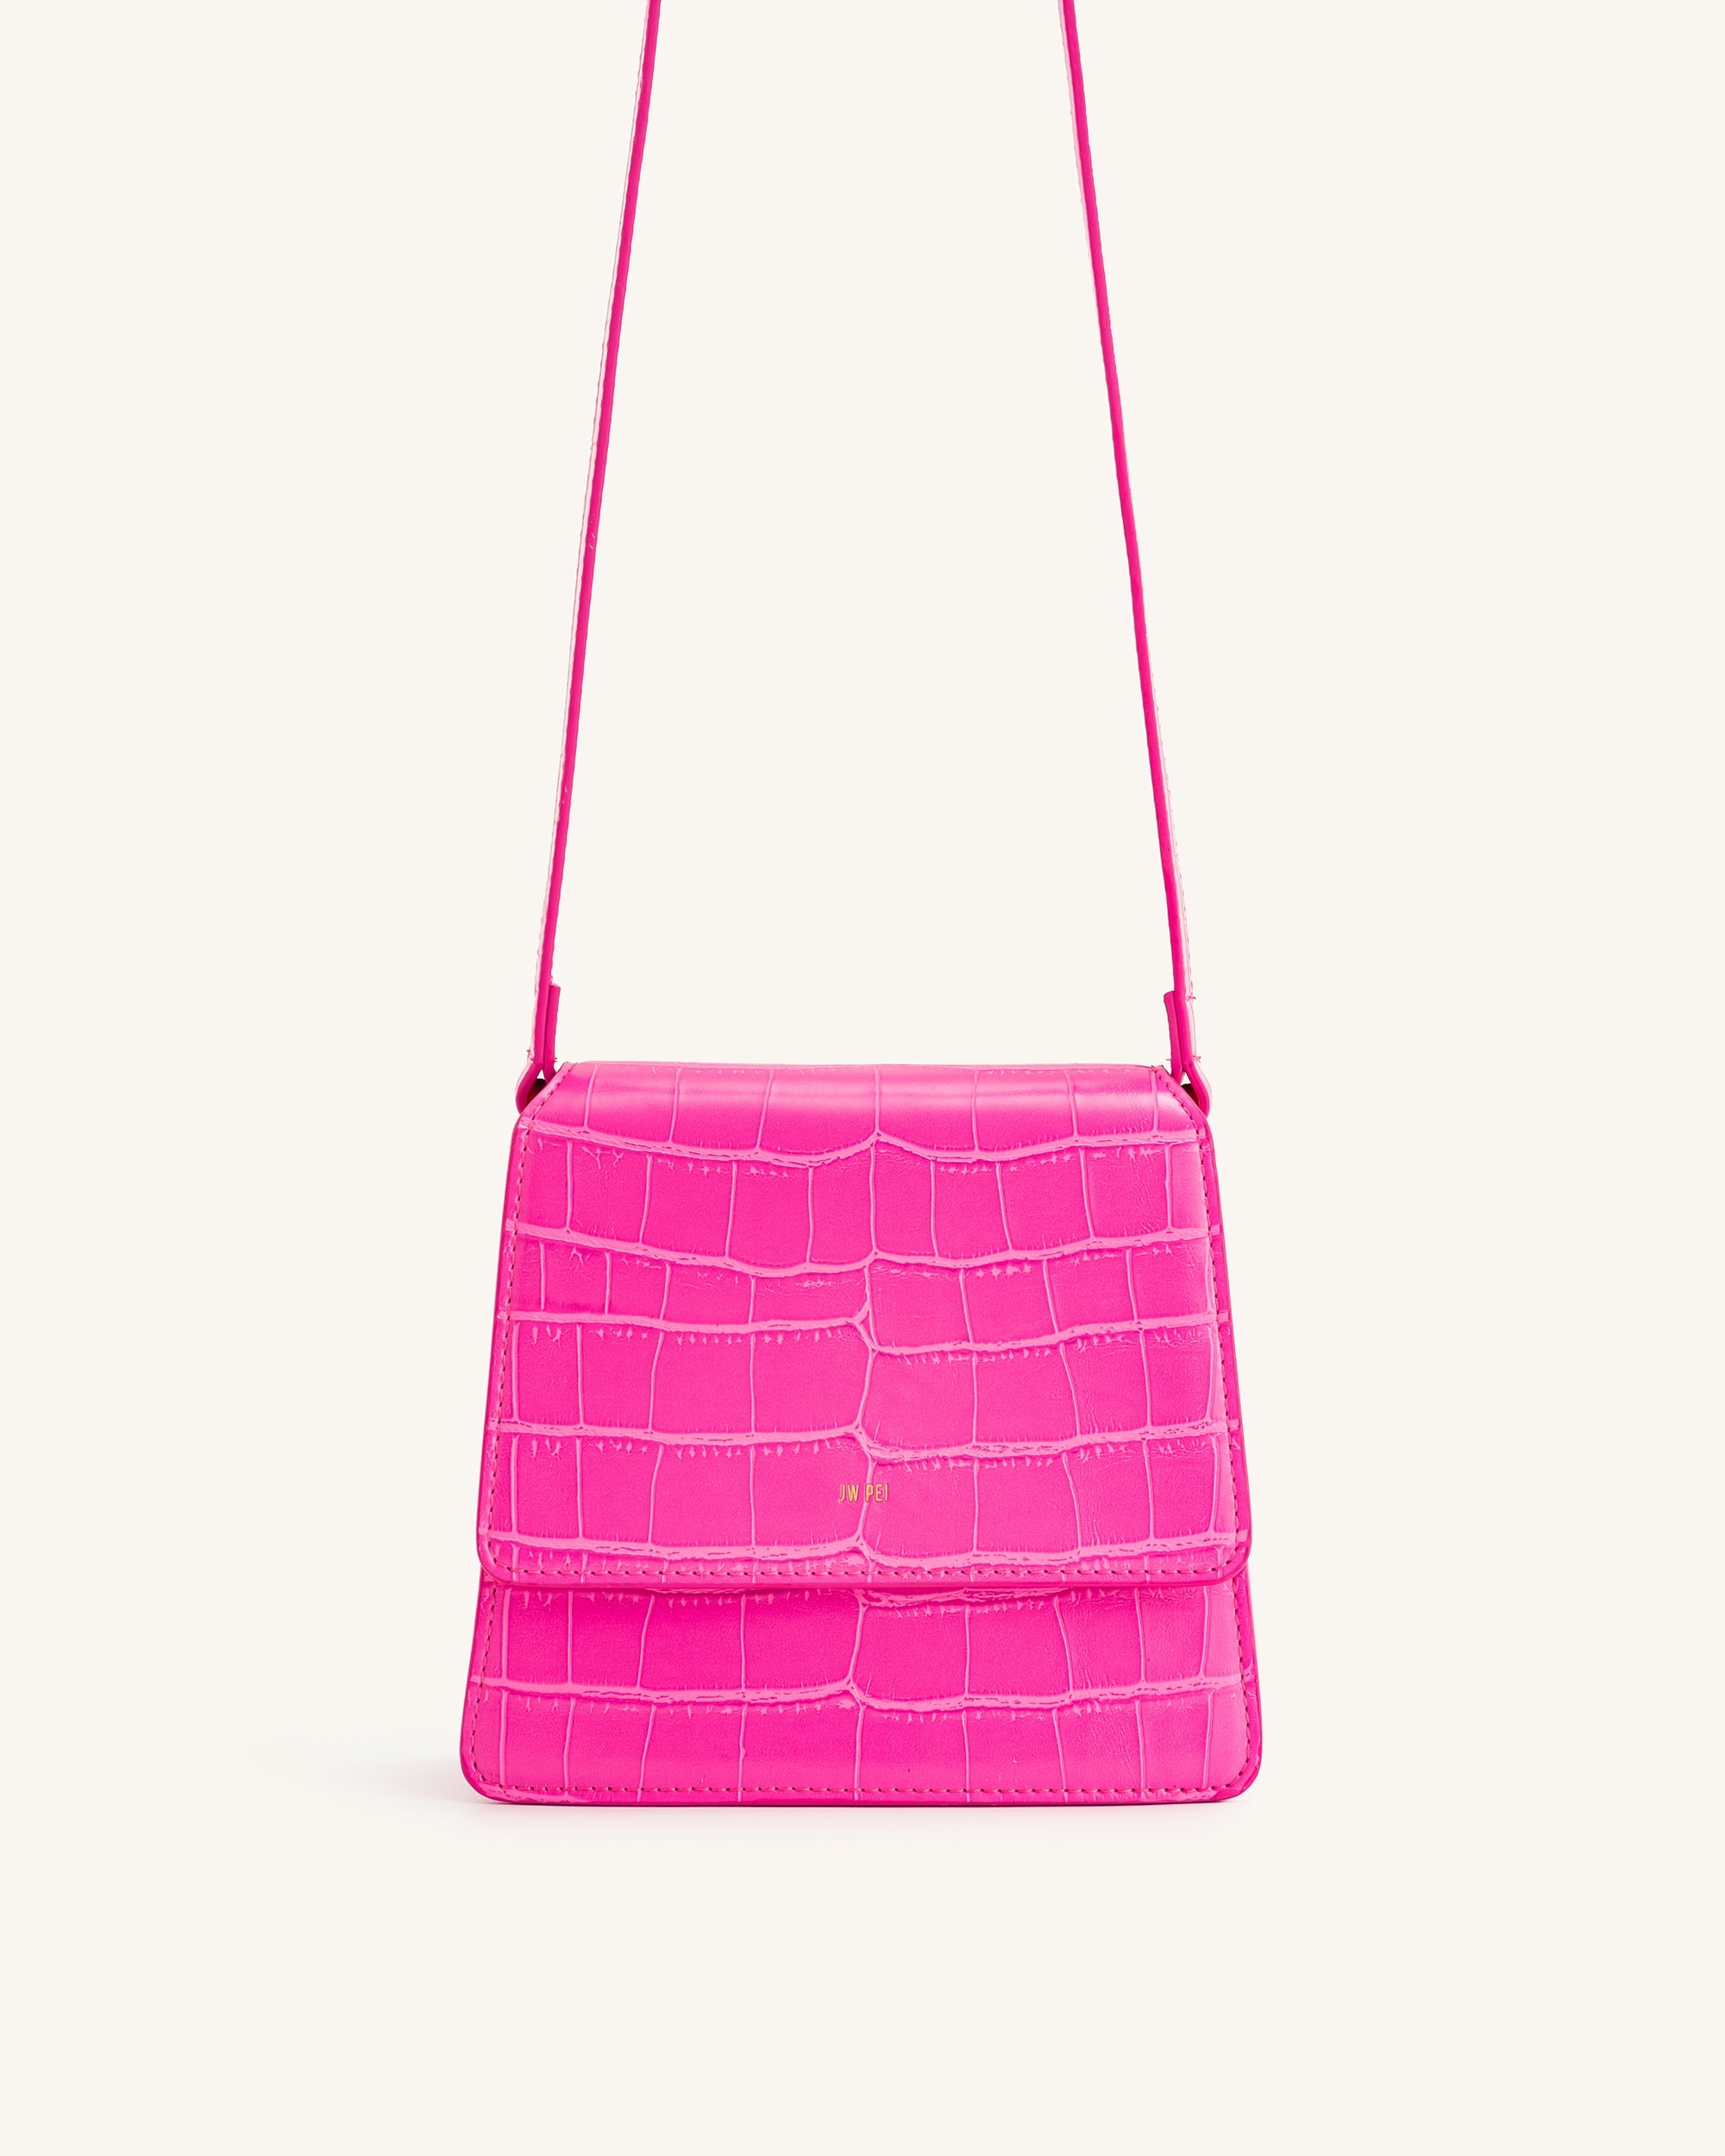 Fae 手提包 - 亮粉色鱷魚紋